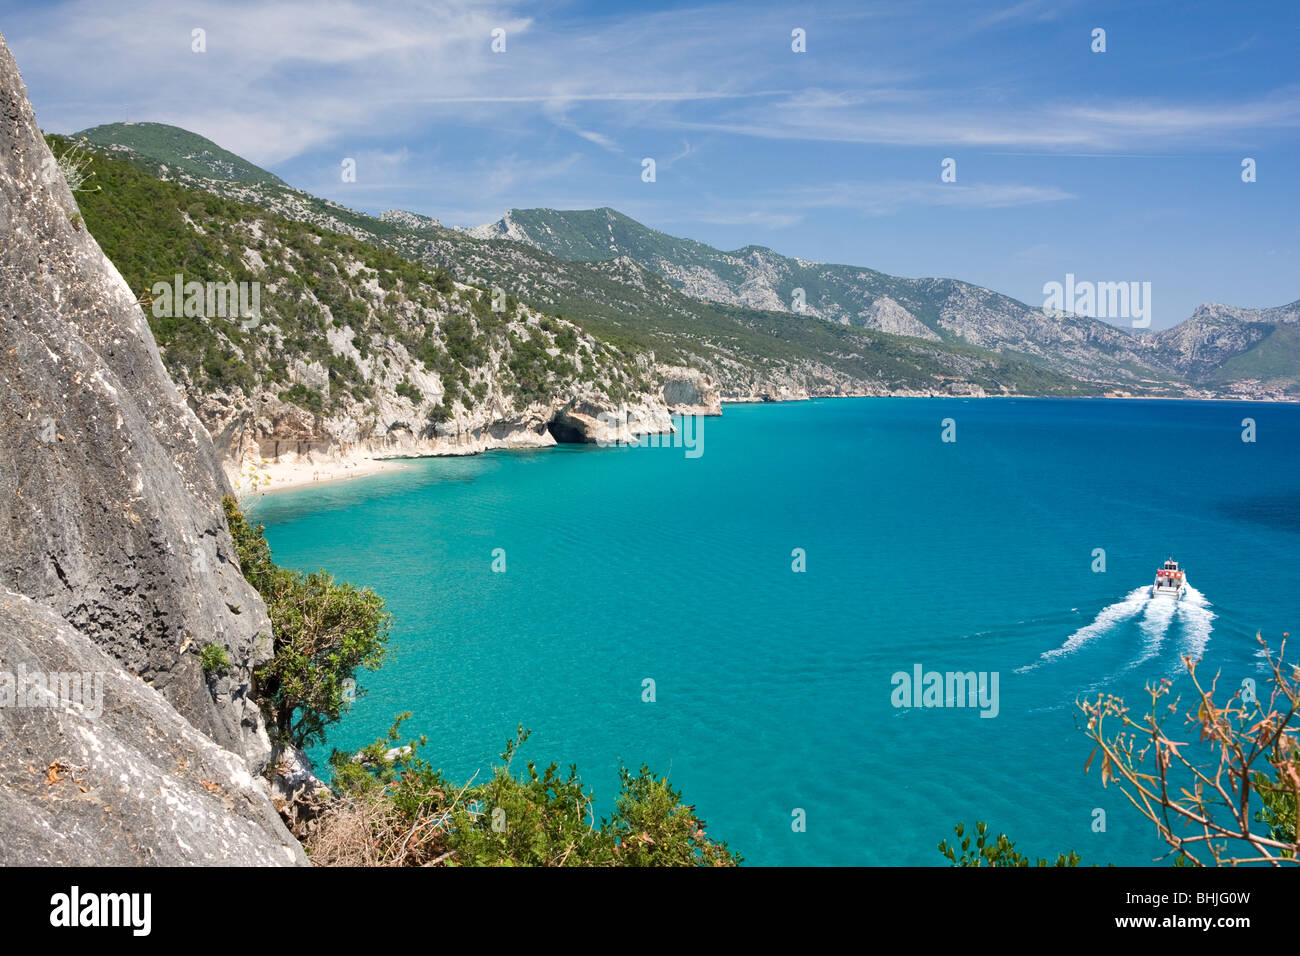 Baie vide Cala Luna Plage, Sardaigne, île de l'Italie. Eau bleu clair dans la baie de Cala Luna, Mer Méditerranée. Banque D'Images